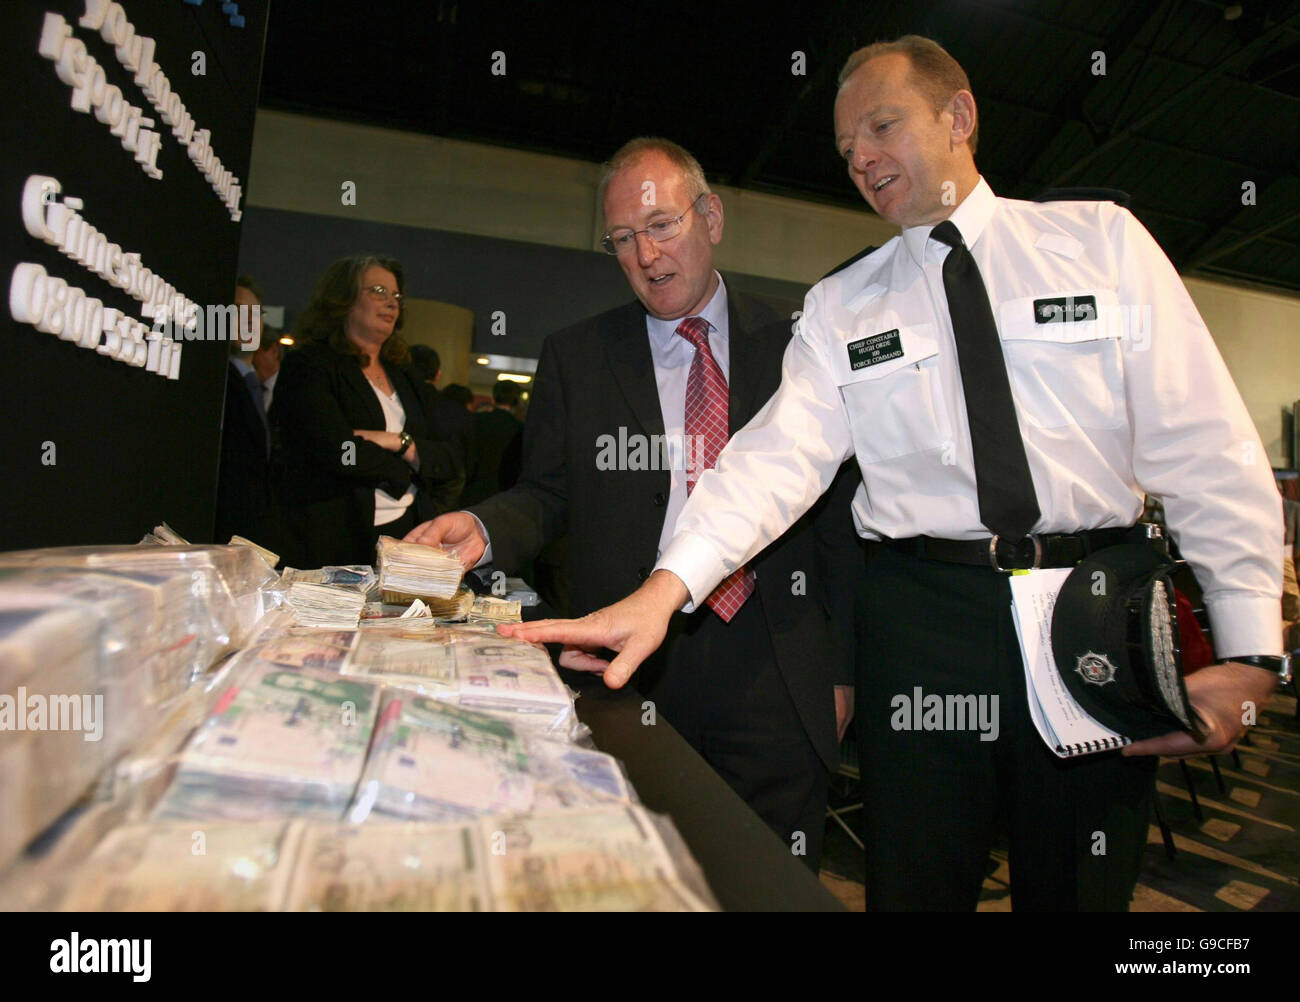 Ministre de la sécurité Paul James Burgevin (à gauche) avec Hugh Orde, chef de police du Service de police de l'Irlande, examiner certains des billets contrefaits saisis par la police au cours de la dernière année en Irlande du Nord. Banque D'Images